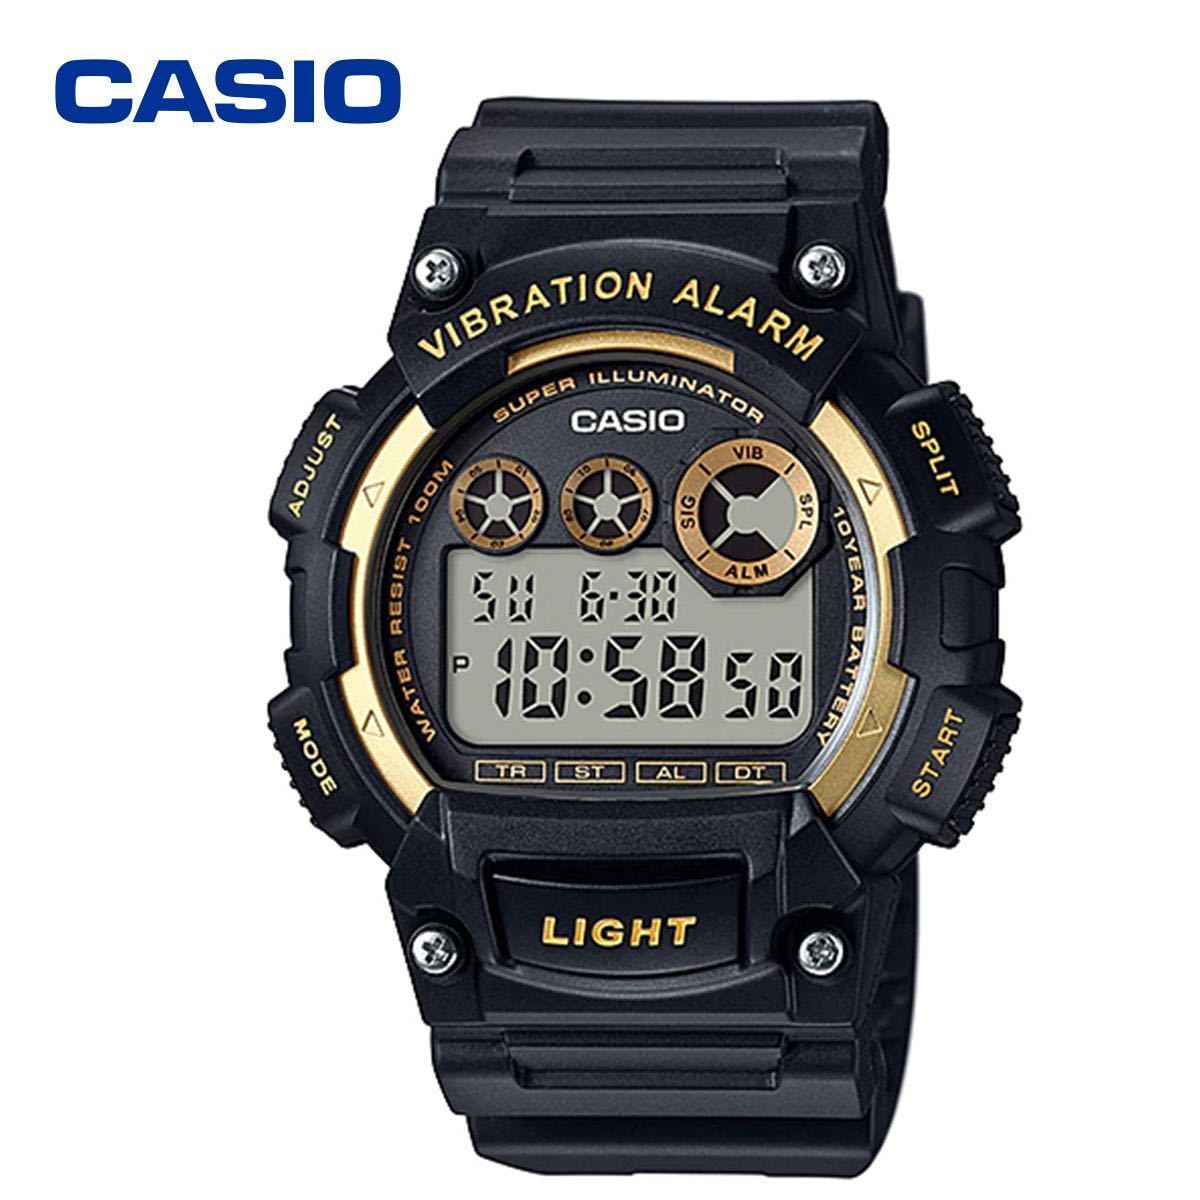 バイブレーション アラーム CASIO カシオ W735 ブラック ゴールド 腕時計 デジタル 男の子 メンズ 男性 キッズ 振動 バイブ 防水 軽量_画像1